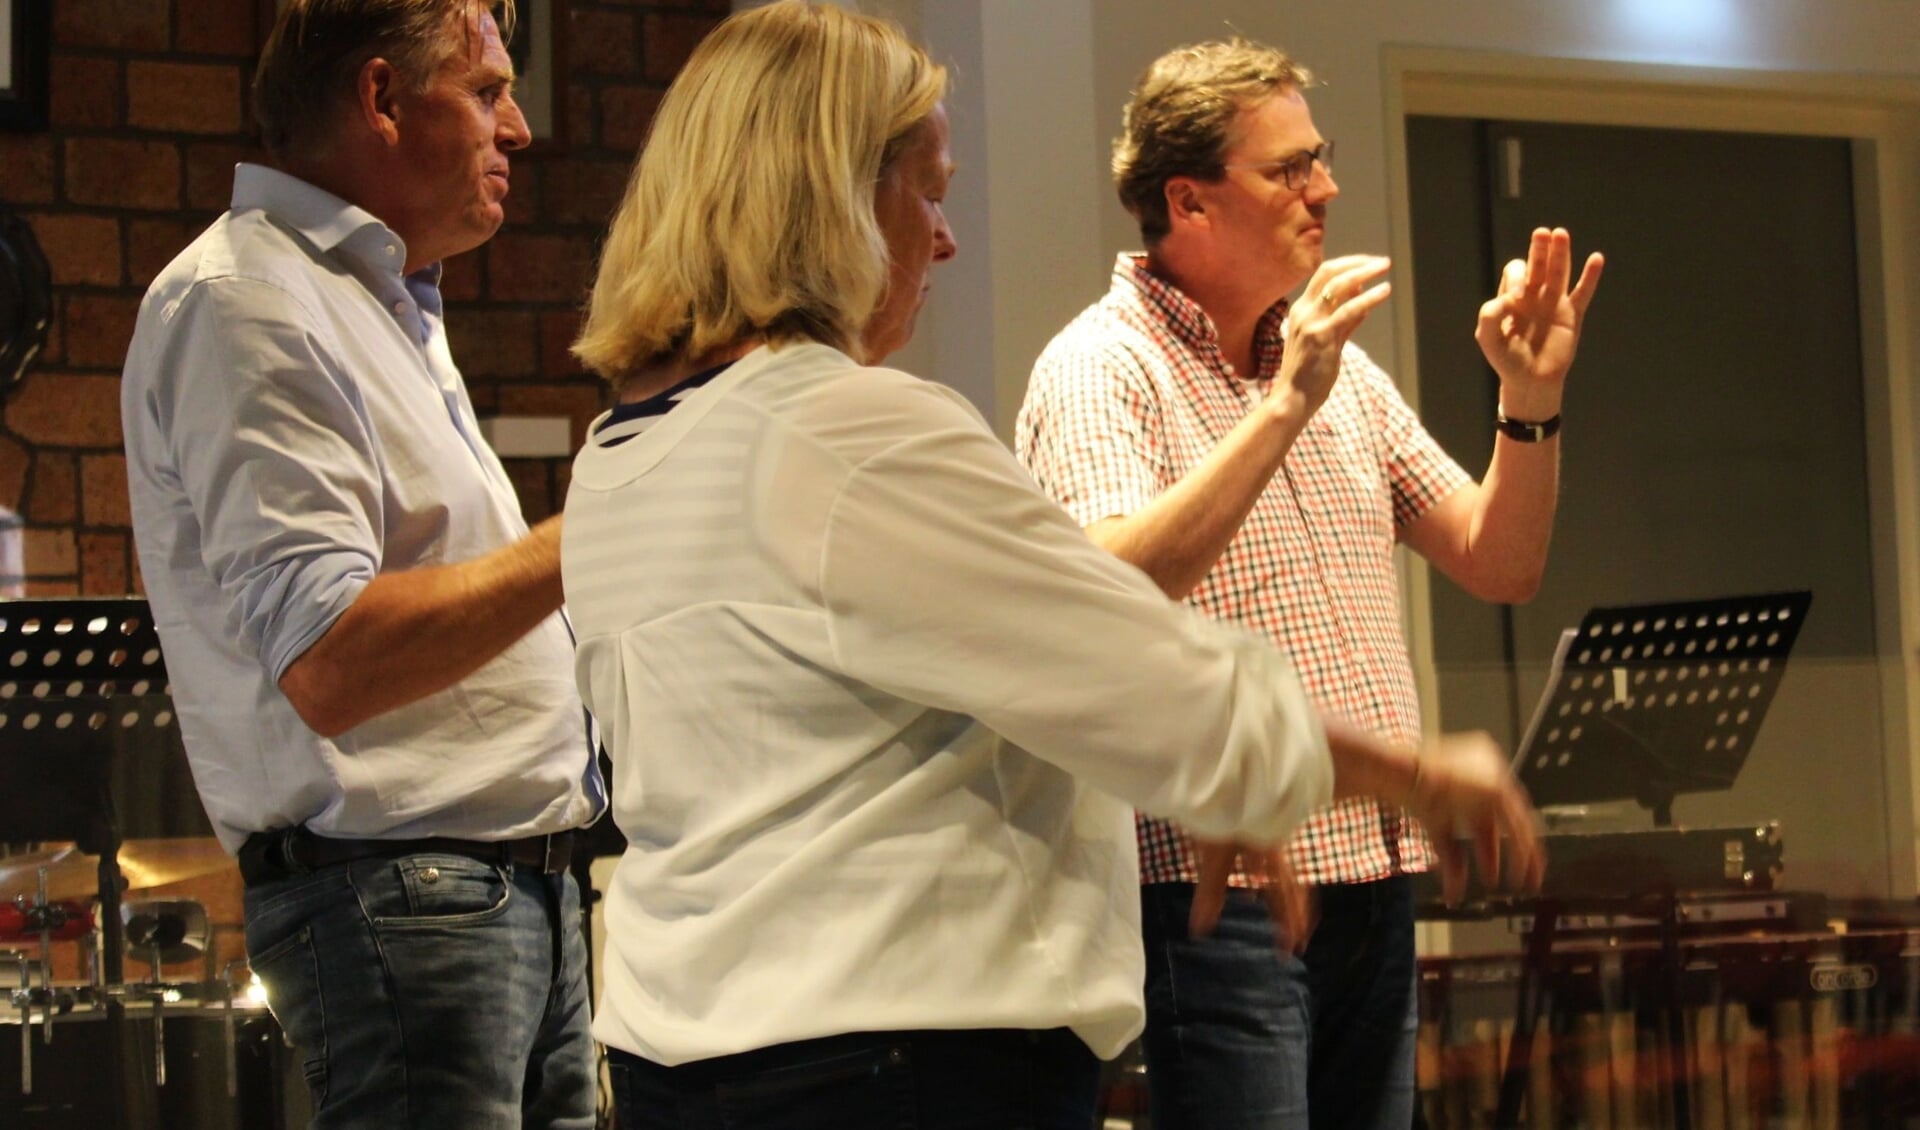 Robert Landsman, Mieke Kromwijk en Patrick van den Brink waren - met hun collega's - zaterdag druk aan het oefenen om de volgende maestro te worden.